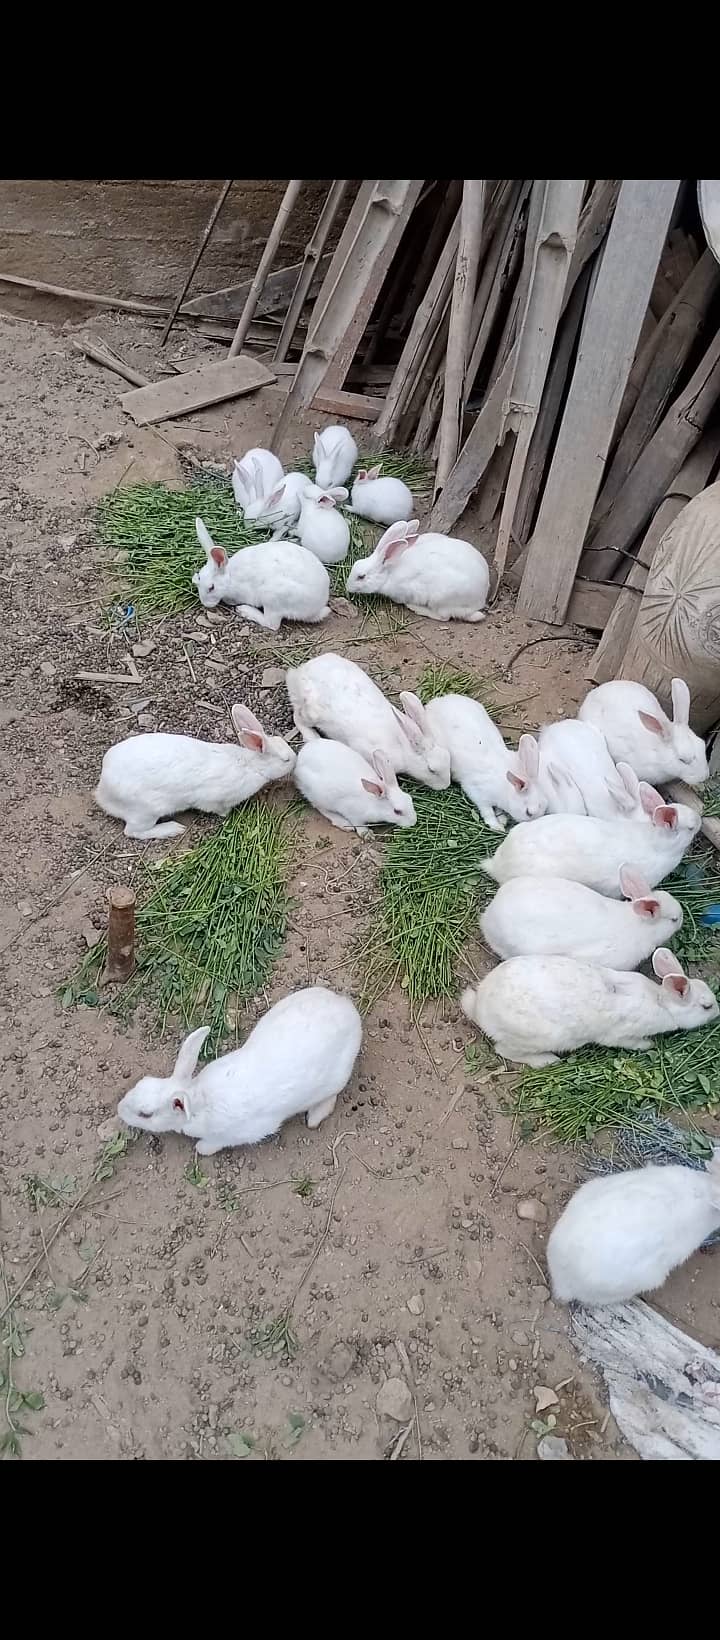 Rabbit bunnies available 0